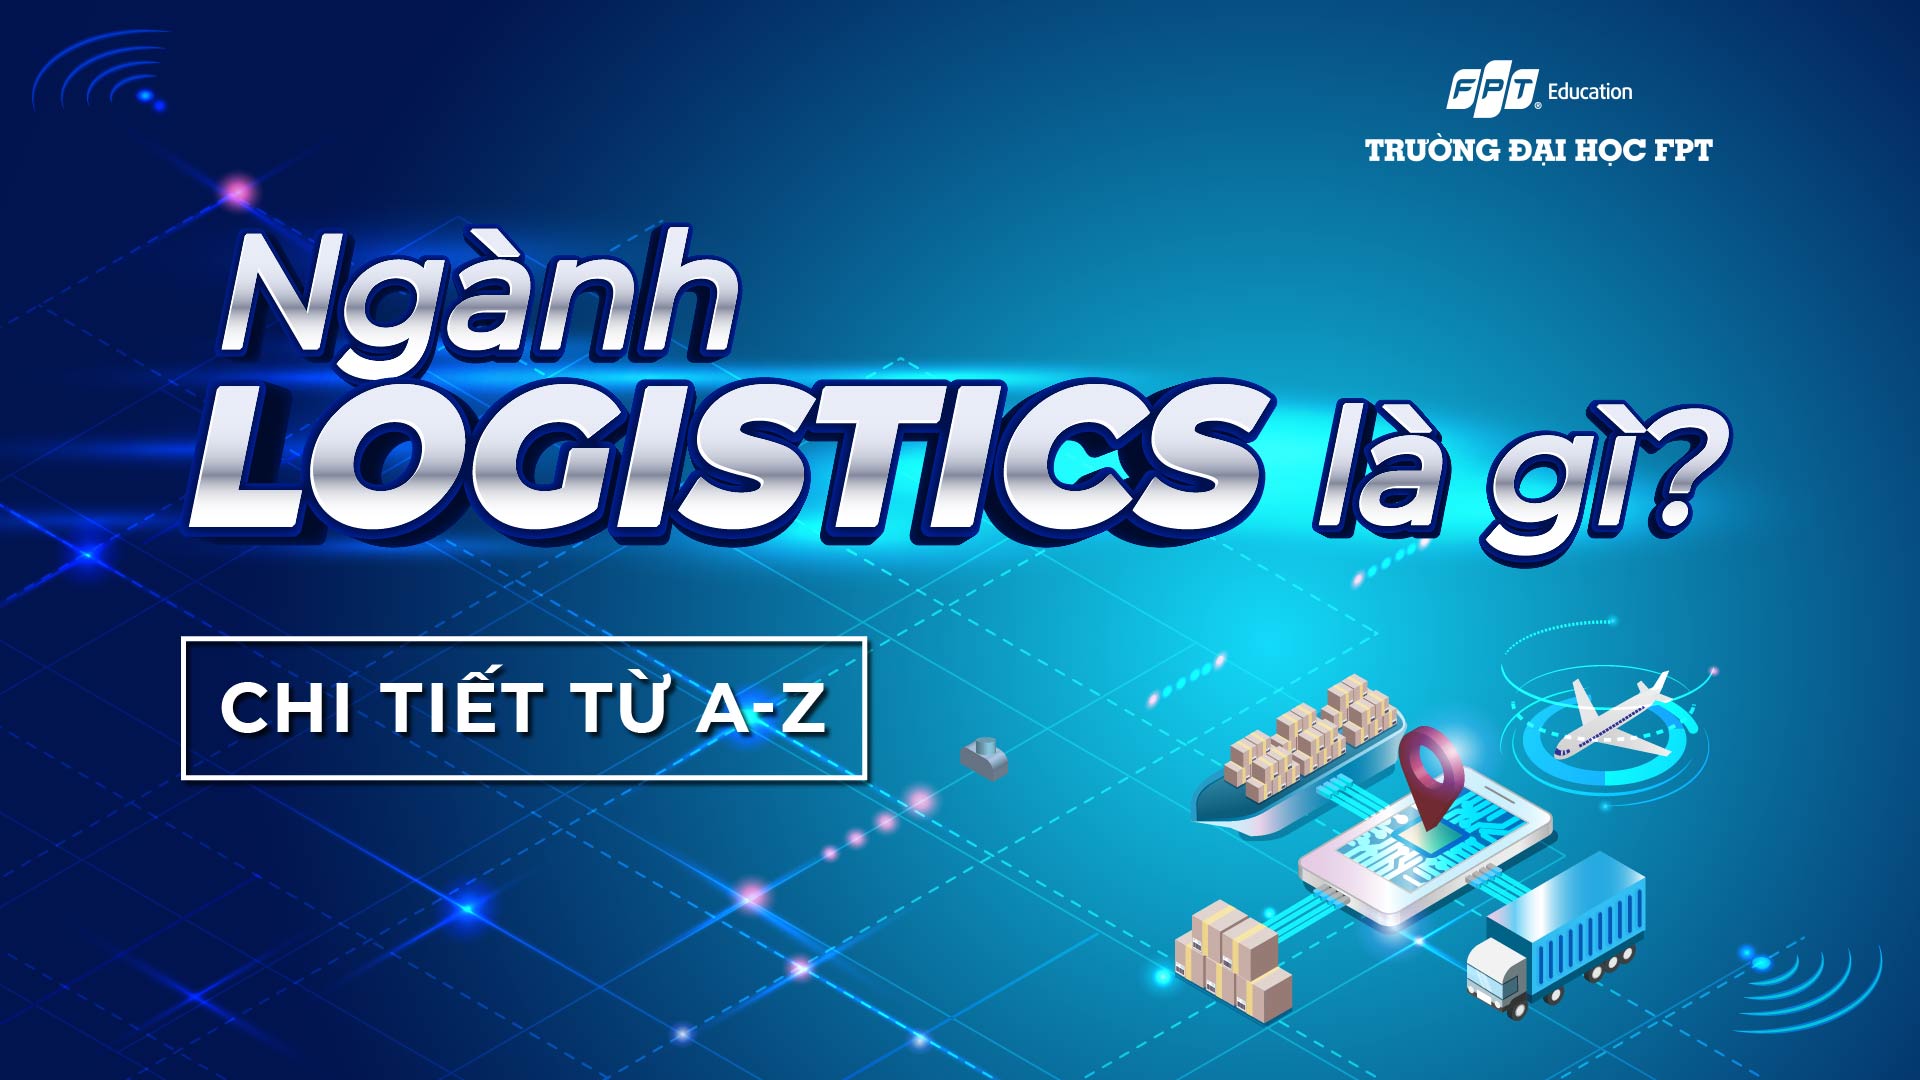 Ngành Logistics là gì? Chi tiết từ A-Z